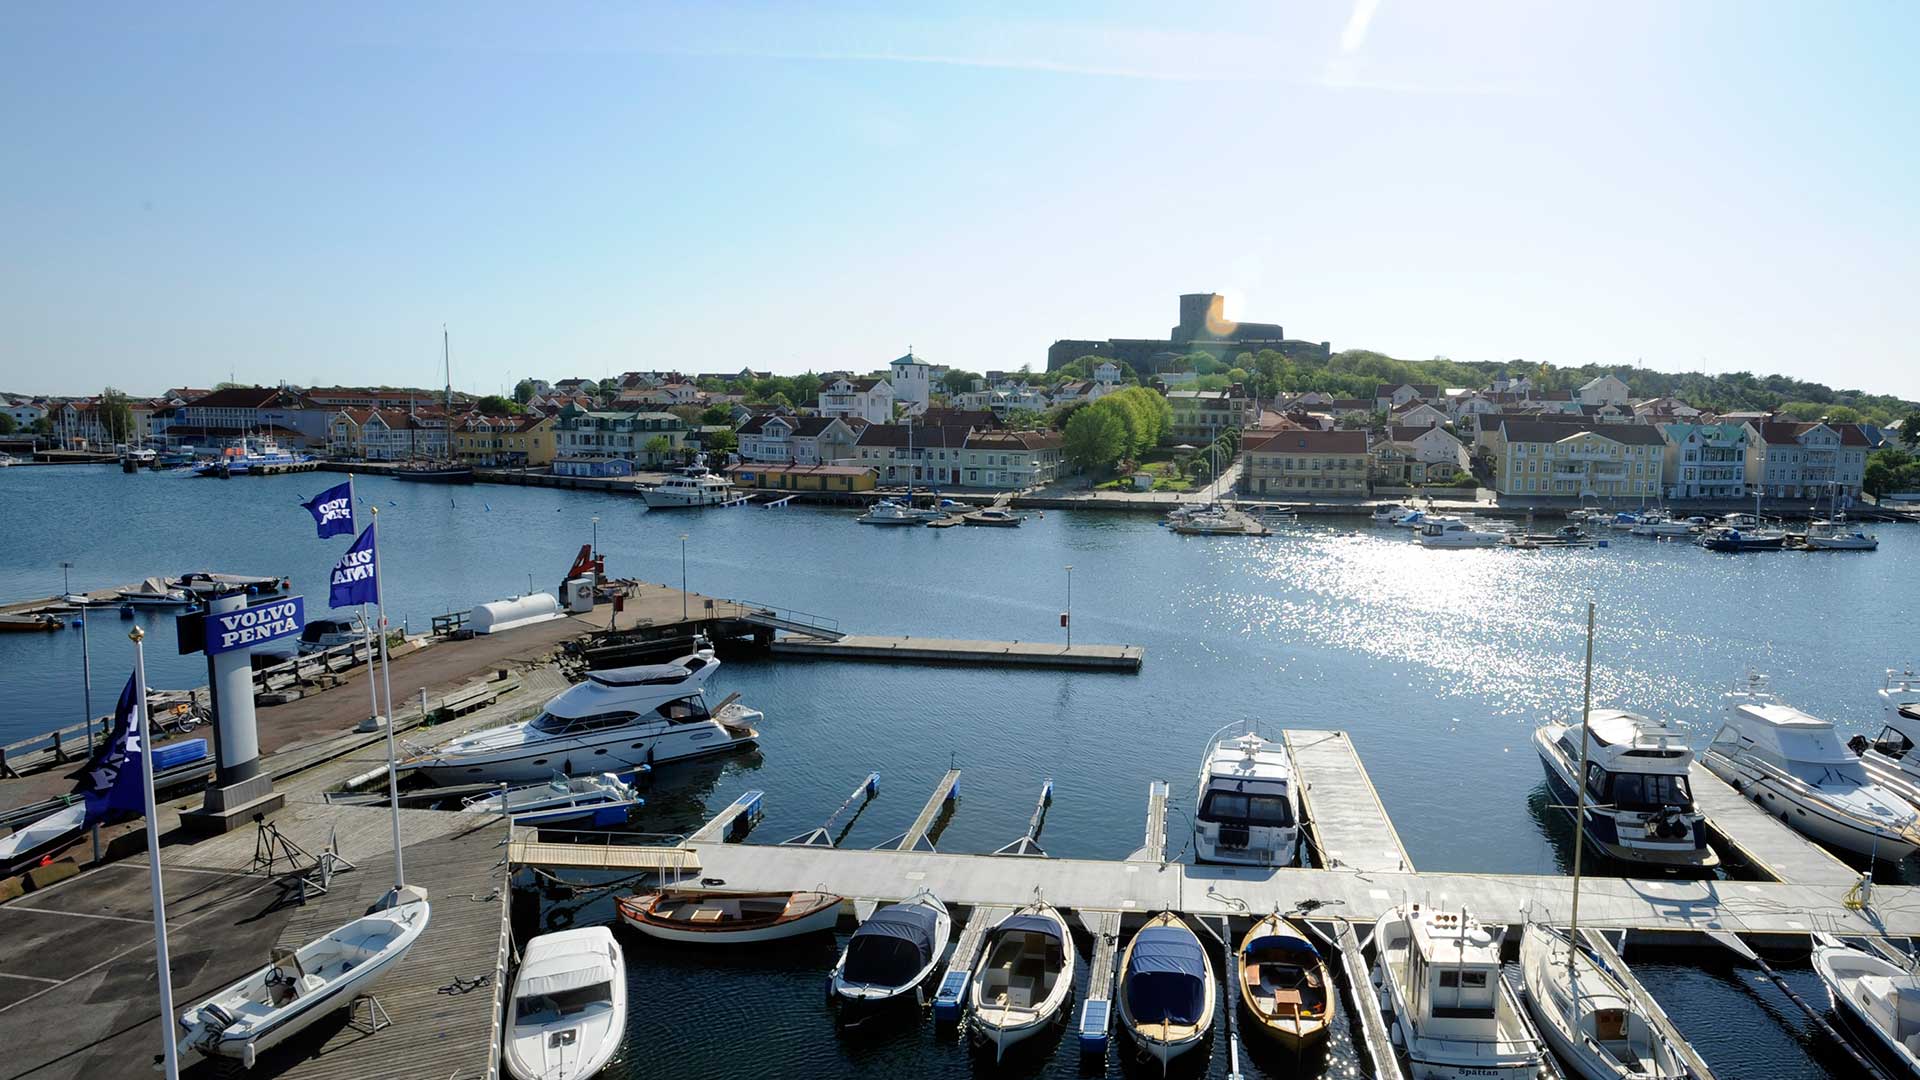 Boat show in Marstrand